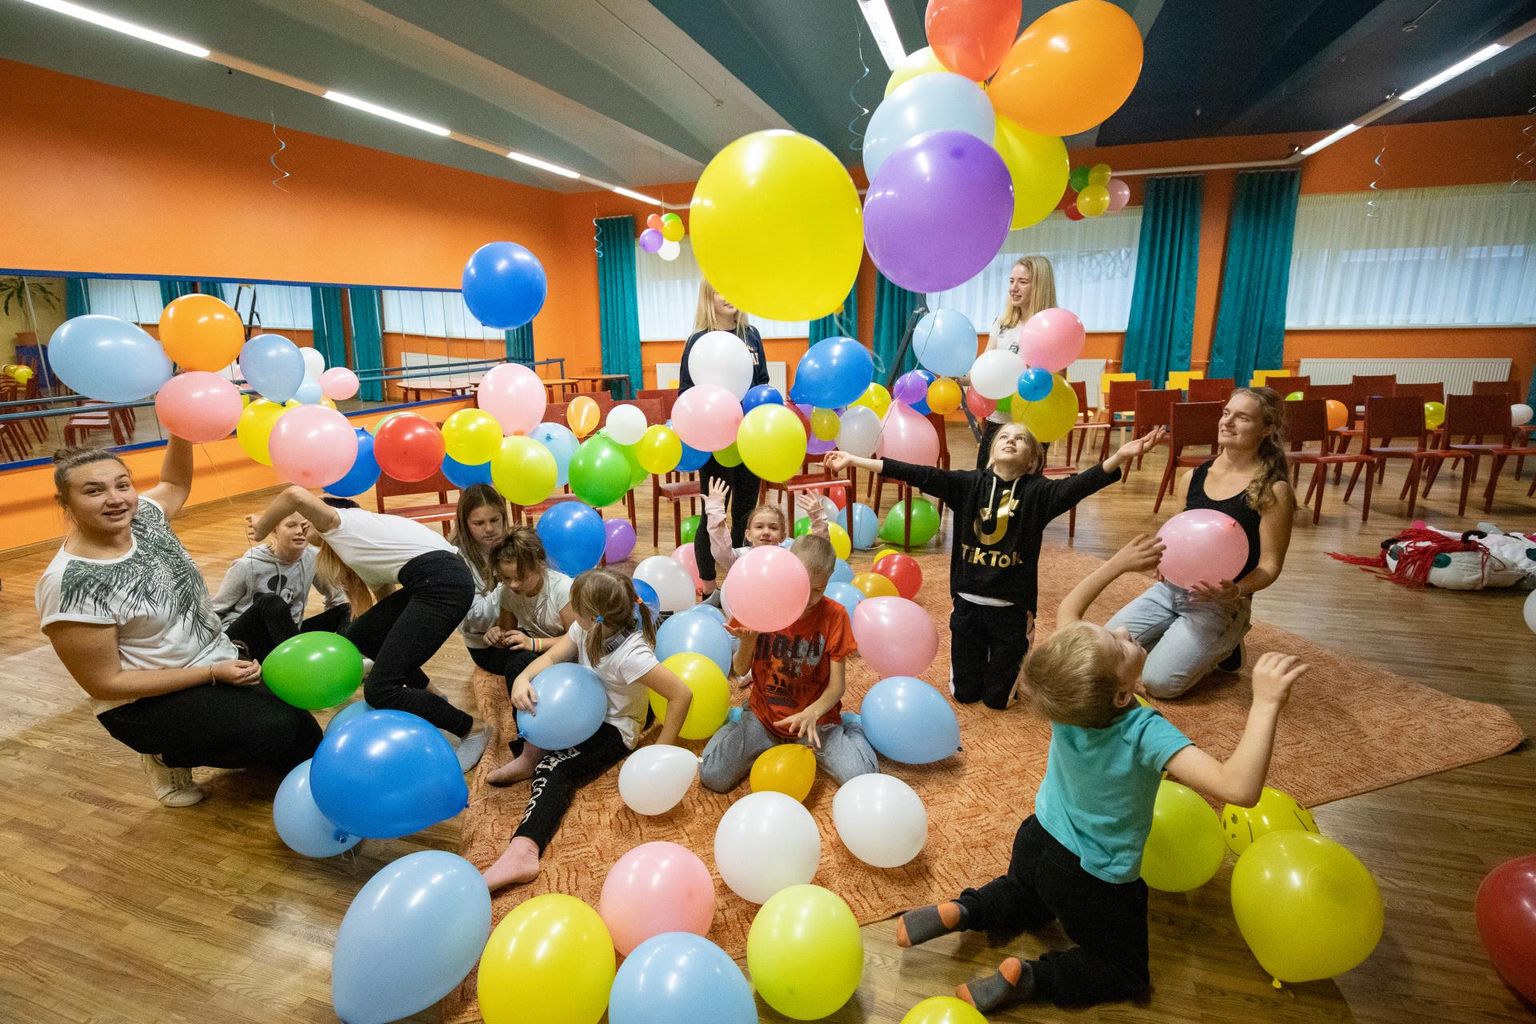 Lastekaitsepäev tõotab kulgeda lõbusas meeleolus. Sõmeru noortekeskus aitab Rakvere valla korraldatud tunnustusüritusel meeleolu luua.